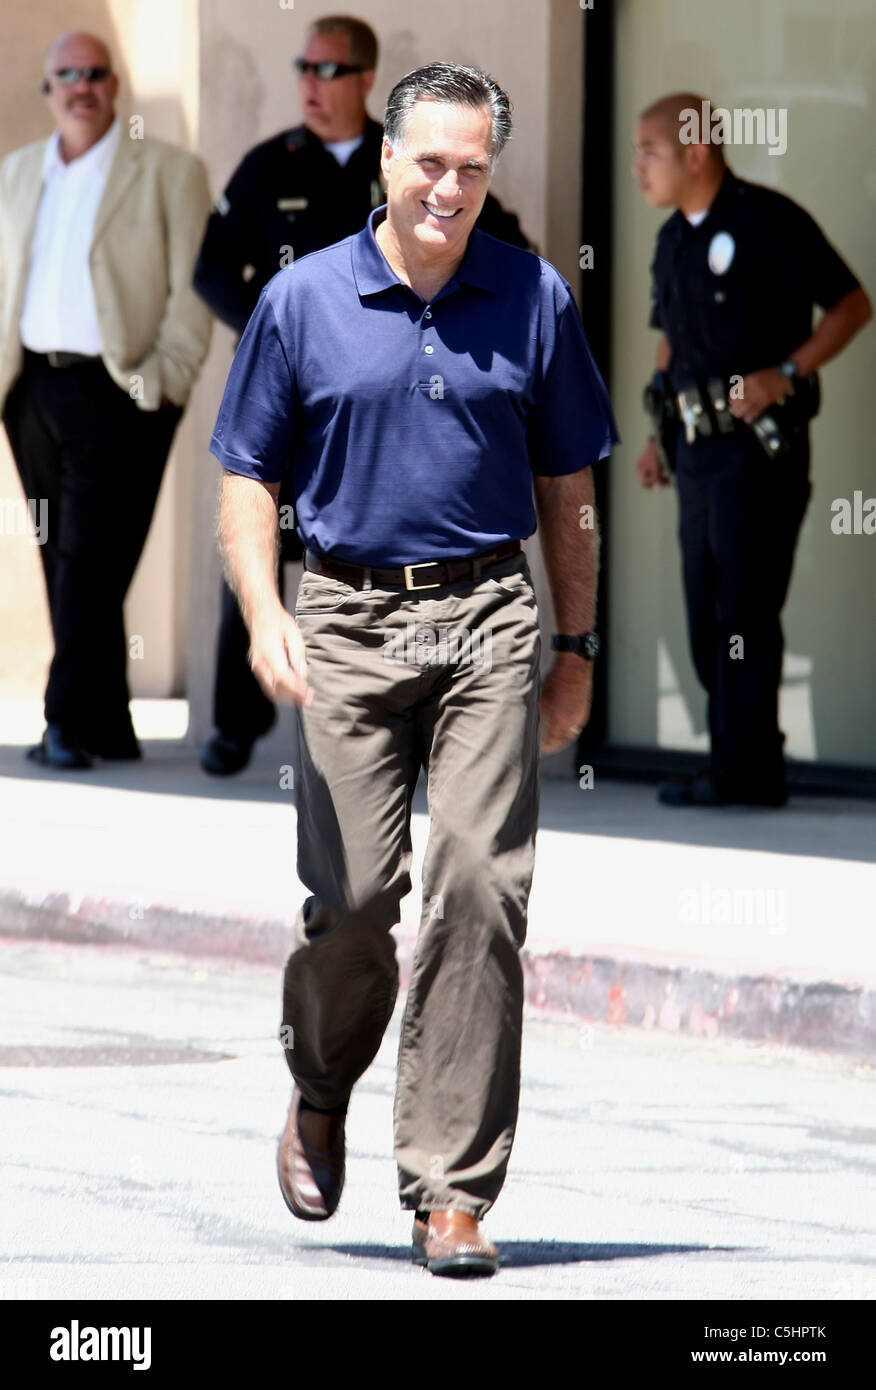 MITT ROMNEY Mitt Romney VISITE LE CENTRE COMMERCIAL VALLEY PLAZA LOS ANGELES Californie le 20 juillet 2011 Banque D'Images